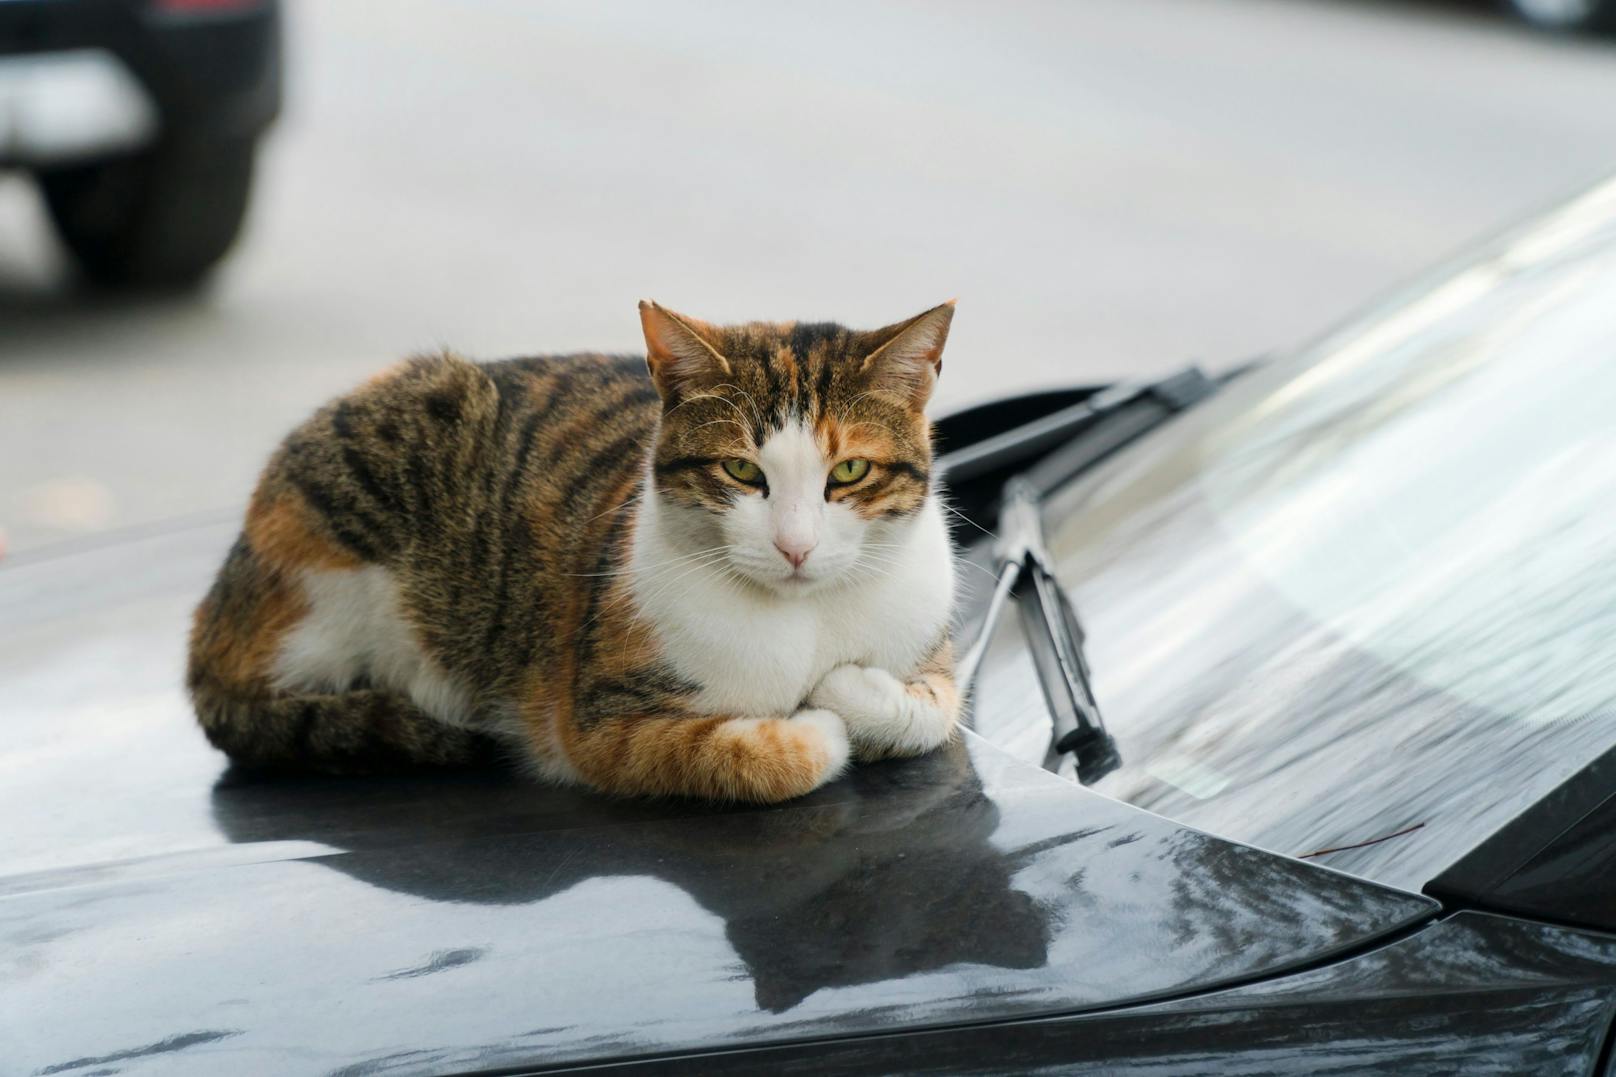 Kratzer im Lack  Katze legte sich auf Auto: Kärntner klagte Tierbesitzerin